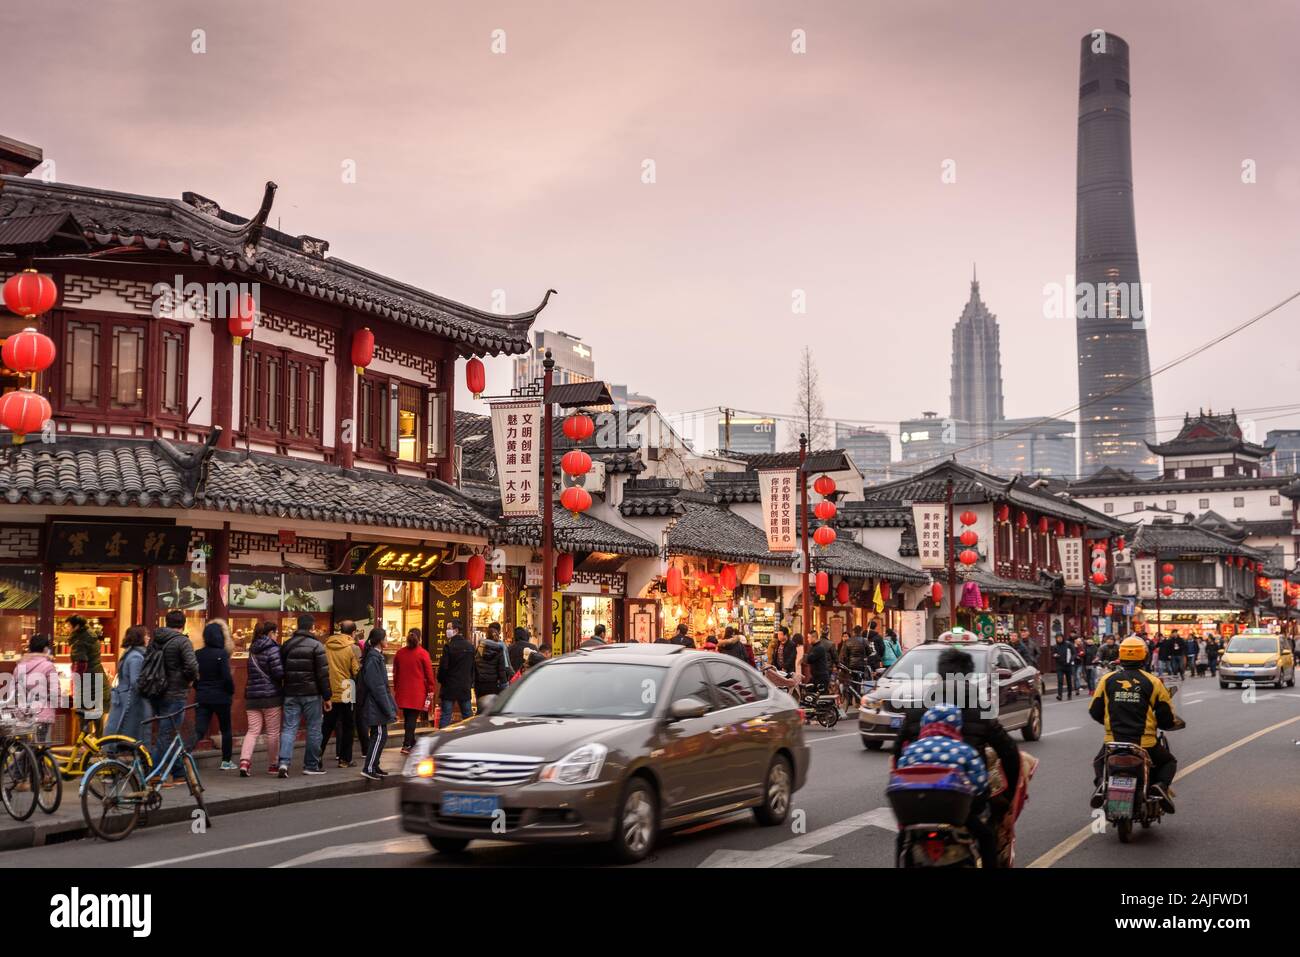 Shanghai, China: Escena callejera en el casco antiguo con edificios asiáticos tradicionales, gente coches de tráfico motos y rascacielos Shanghai Tower Foto de stock